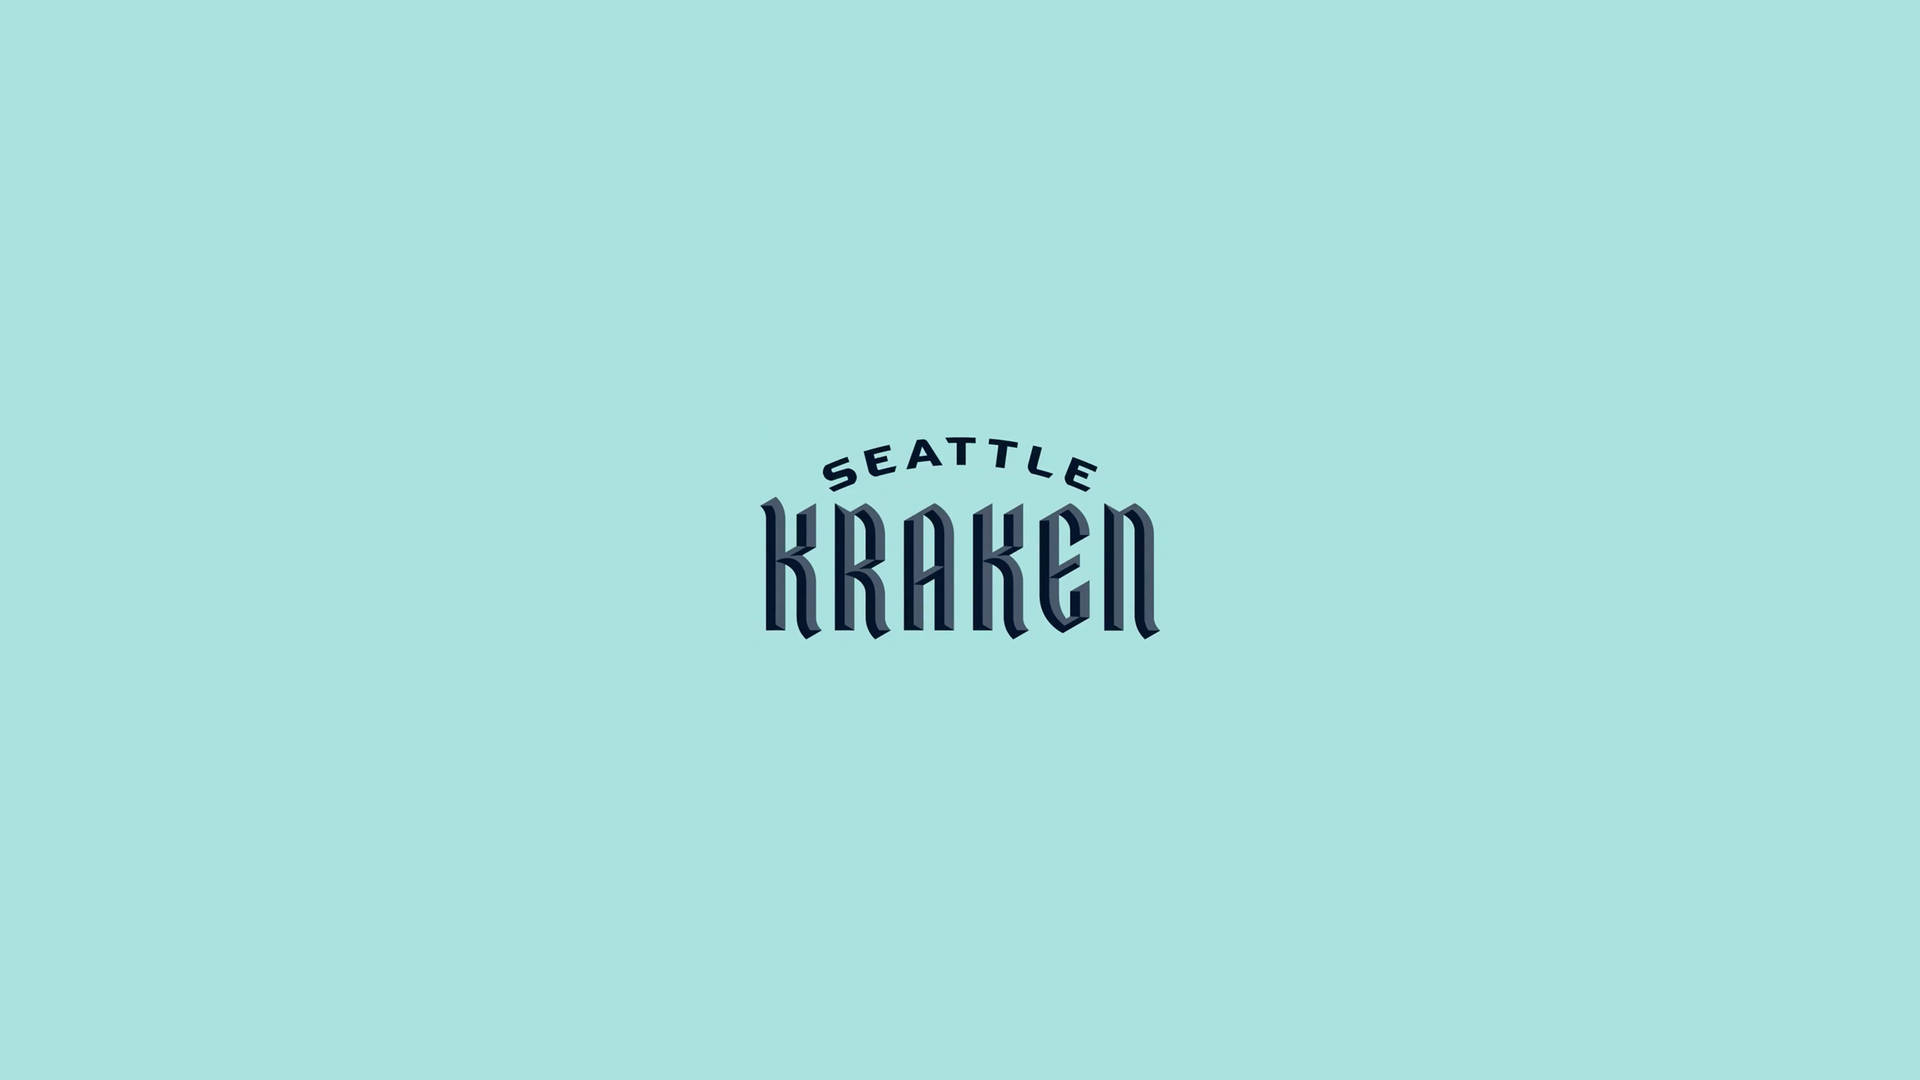 Seattle Kraken Wordmark Lettering